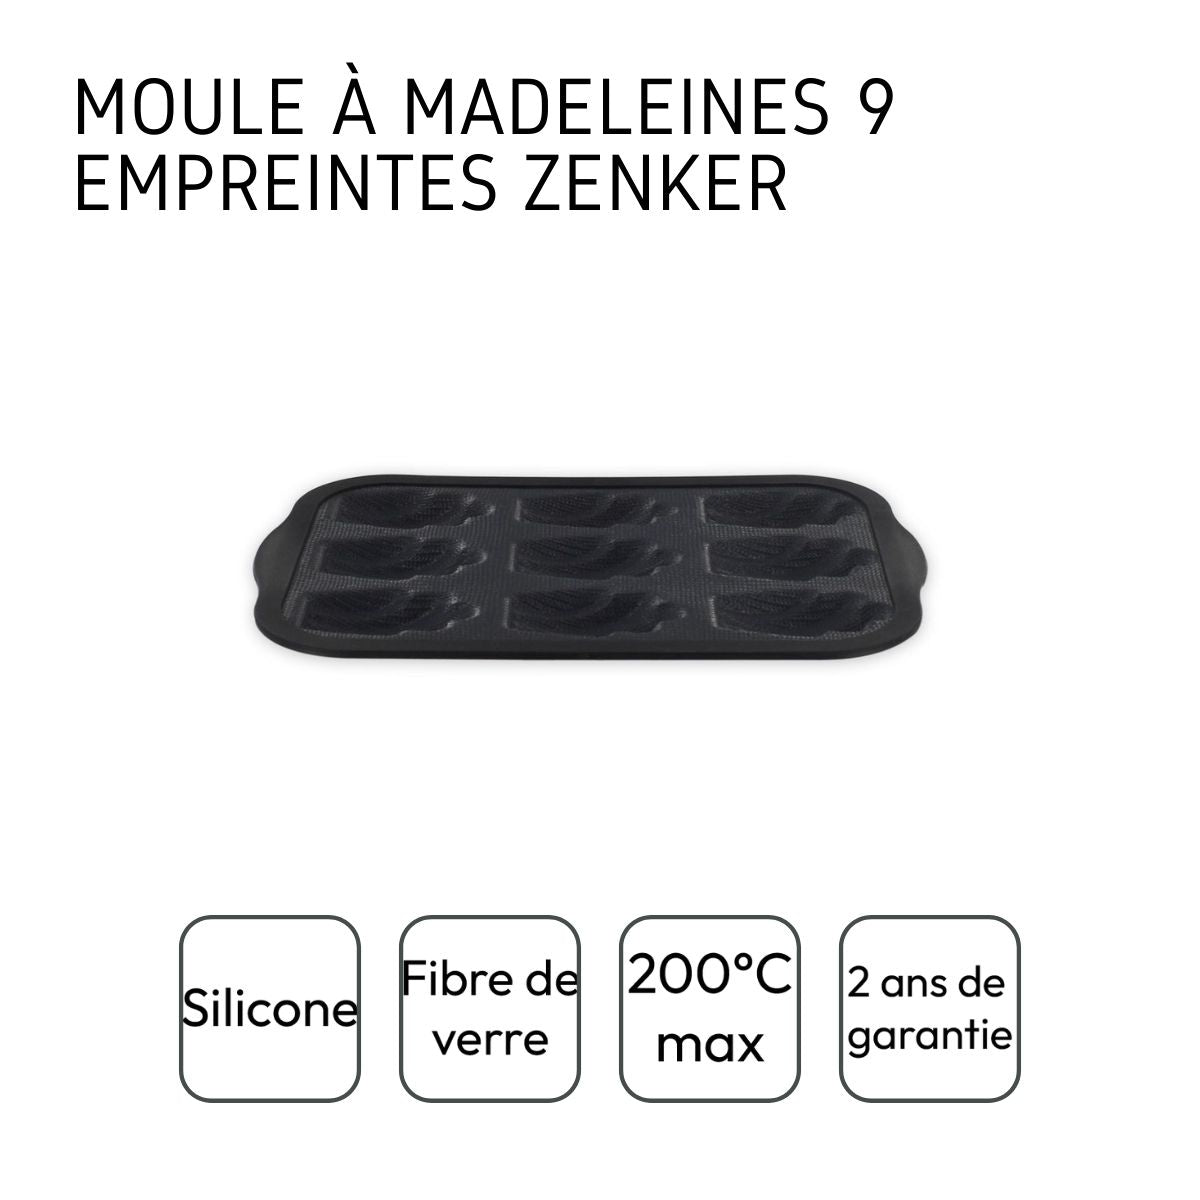 Zenker 685538 Moule 9 madeleines en fibre de verre, moule pour 9 madeleines,  moule à madeleines, Silicone fibre de verre, Gris, 28 x 18 x 2 cm :  : Cuisine et Maison